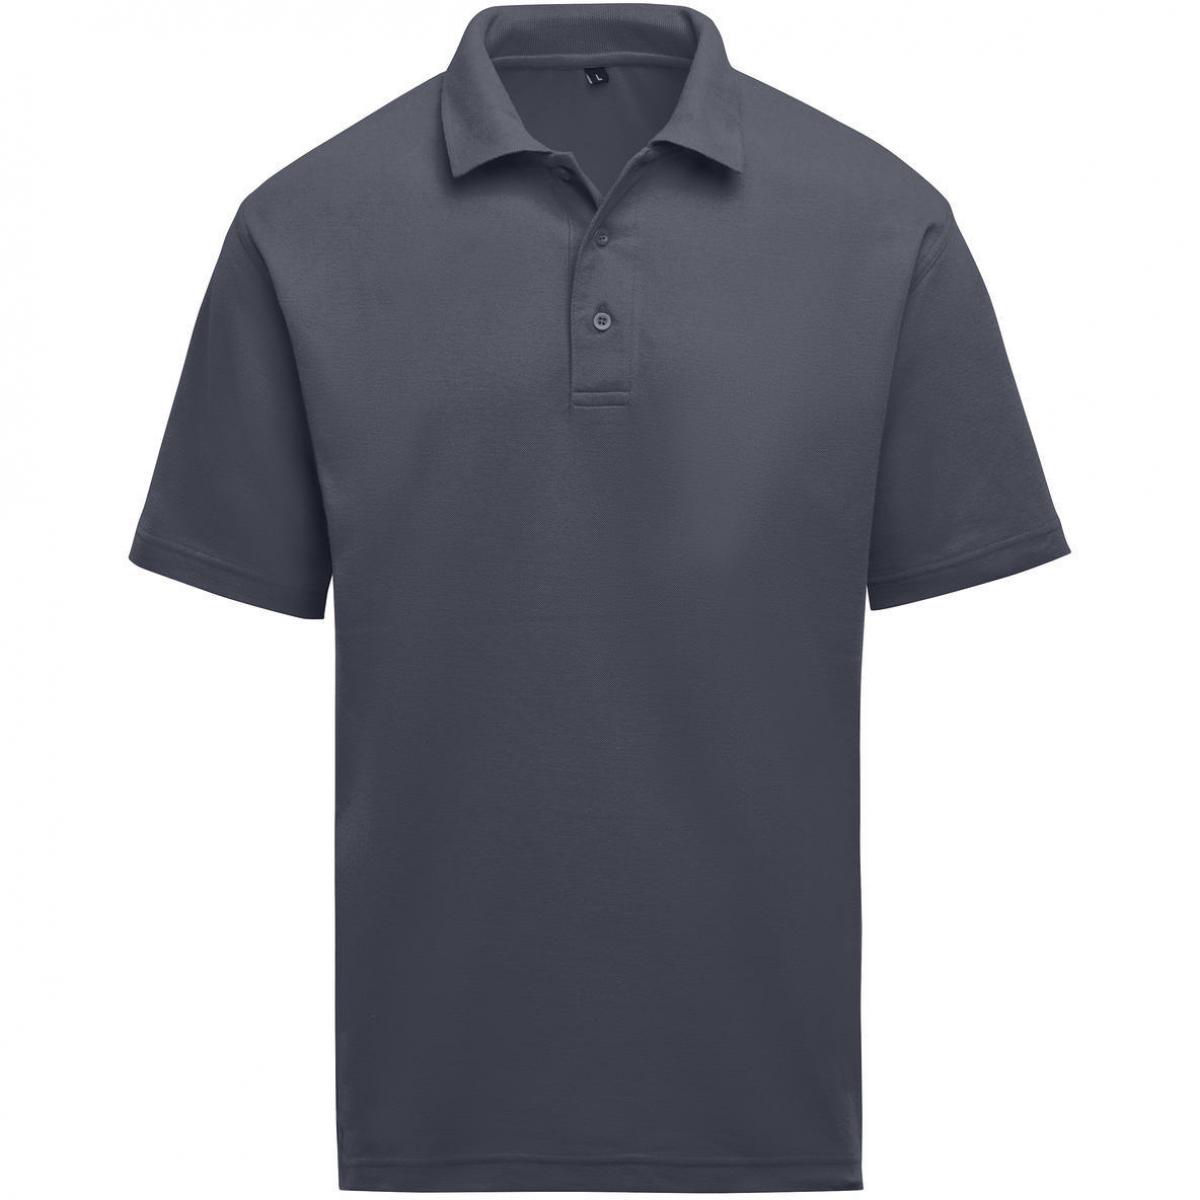 Hersteller: SG Herstellernummer: SGE501 Artikelbezeichnung: Unisex Poloshirt - Workwear - 60°C waschbar Farbe: Charcoal